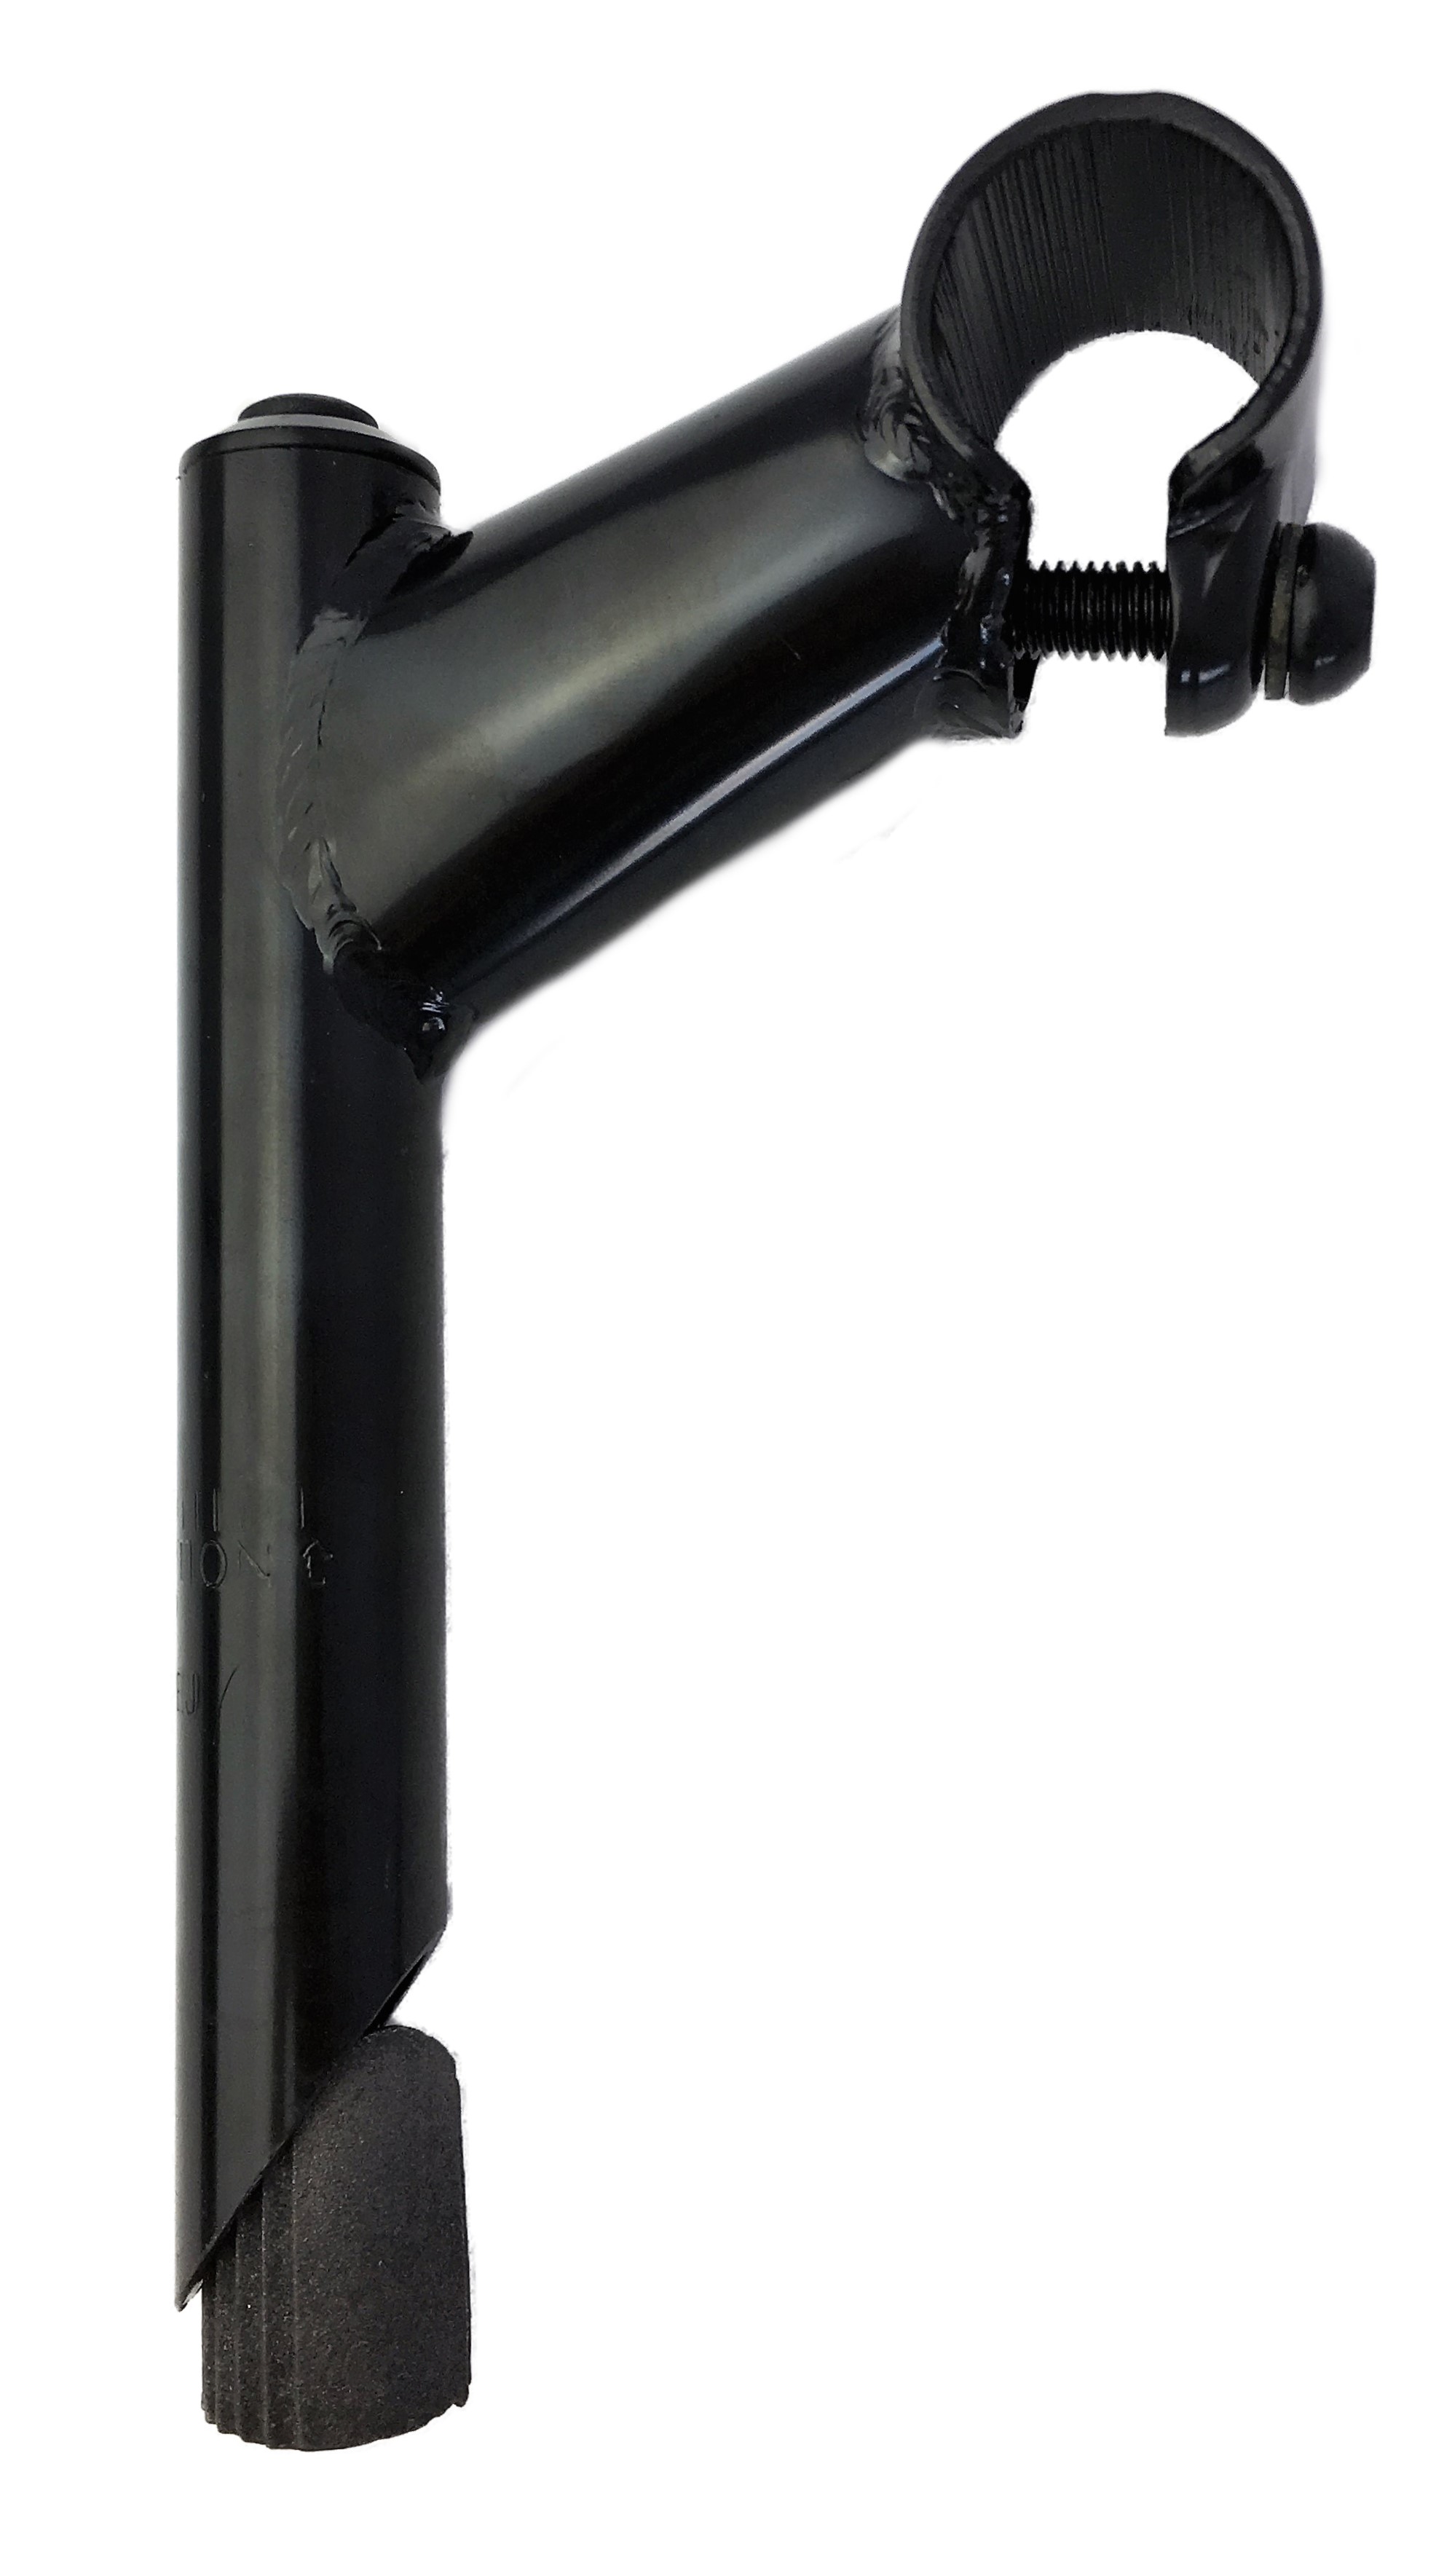 Attacco manubrio 25,4 - 22,2, con cannotto in acciaio dotato di serraggio manubrio a vite semplice, nero, Humpert Ergotec CV 101